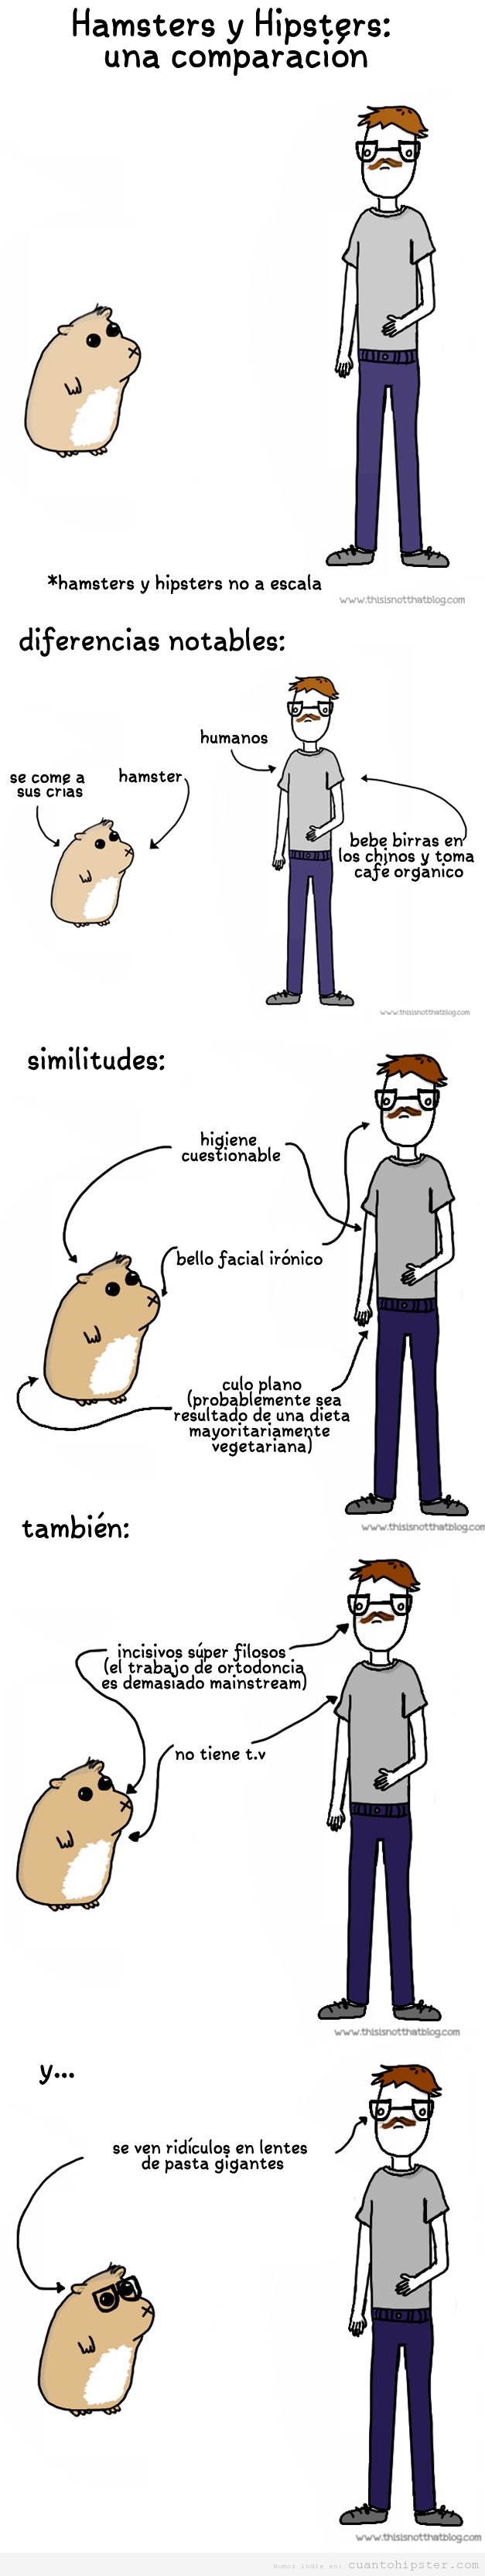 Humor gráfico, la comparación entre hamster y hipster